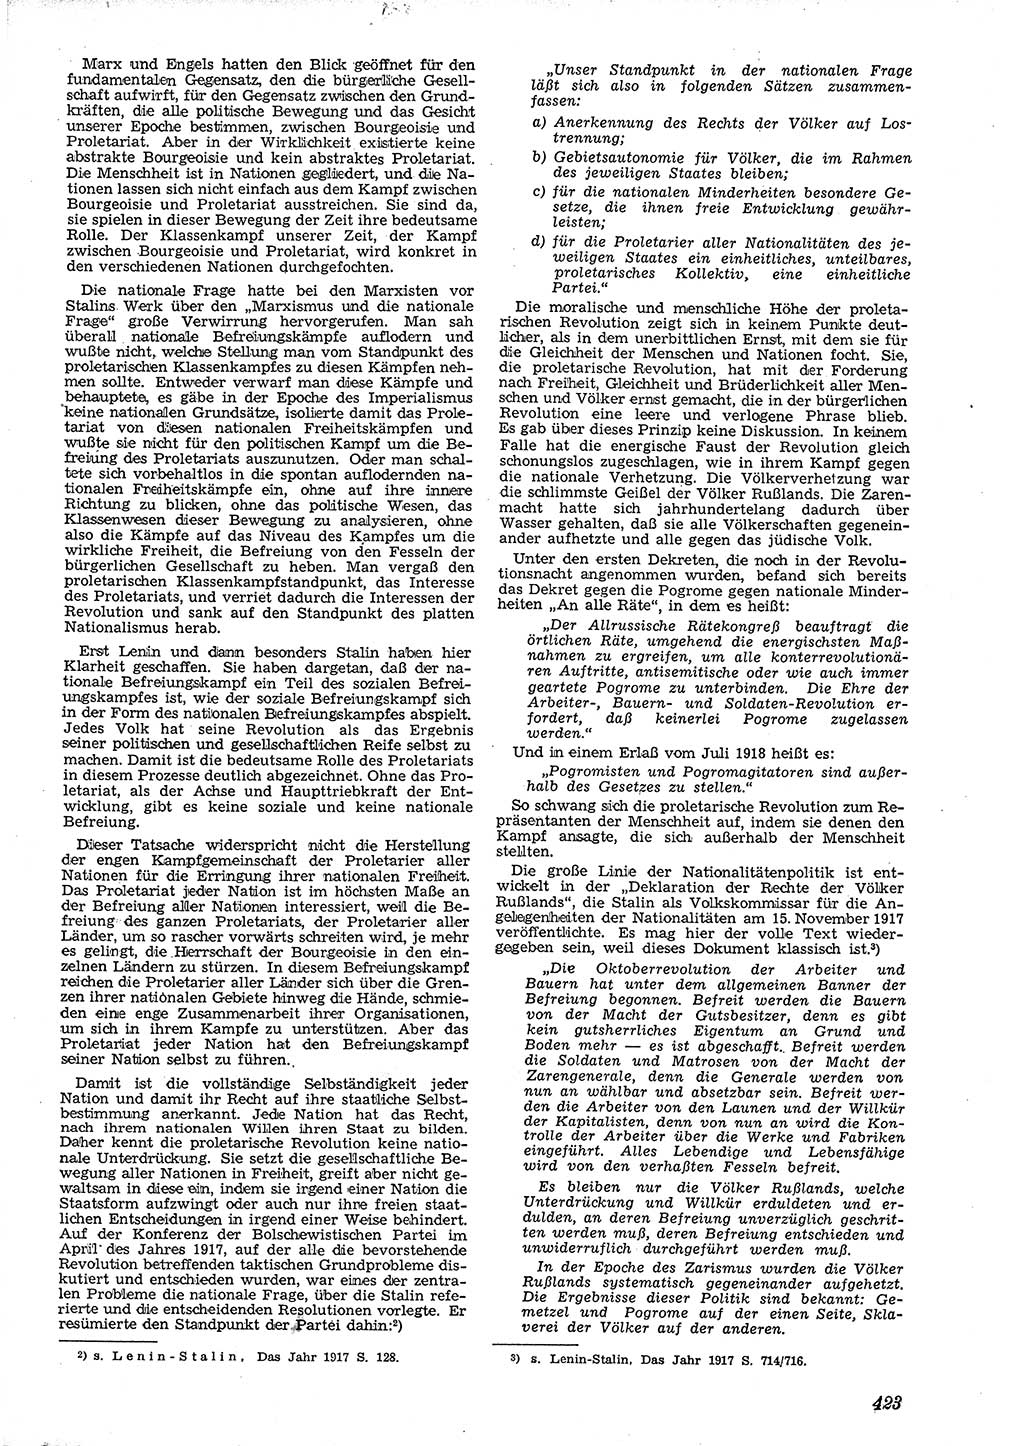 Neue Justiz (NJ), Zeitschrift für Recht und Rechtswissenschaft [Deutsche Demokratische Republik (DDR)], 4. Jahrgang 1950, Seite 423 (NJ DDR 1950, S. 423)